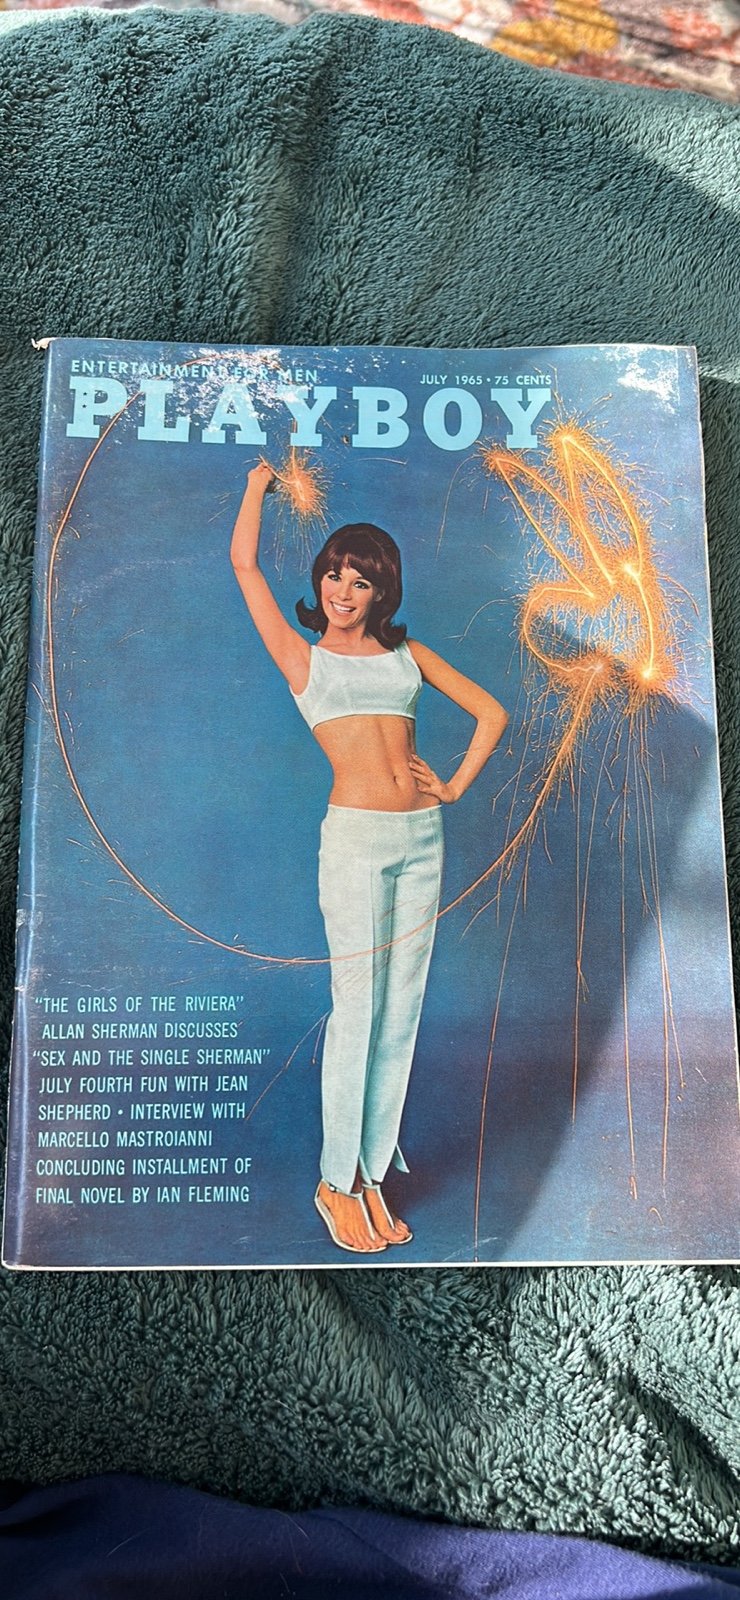 Playboy July 1965 Magazine 4lfsbjLJG